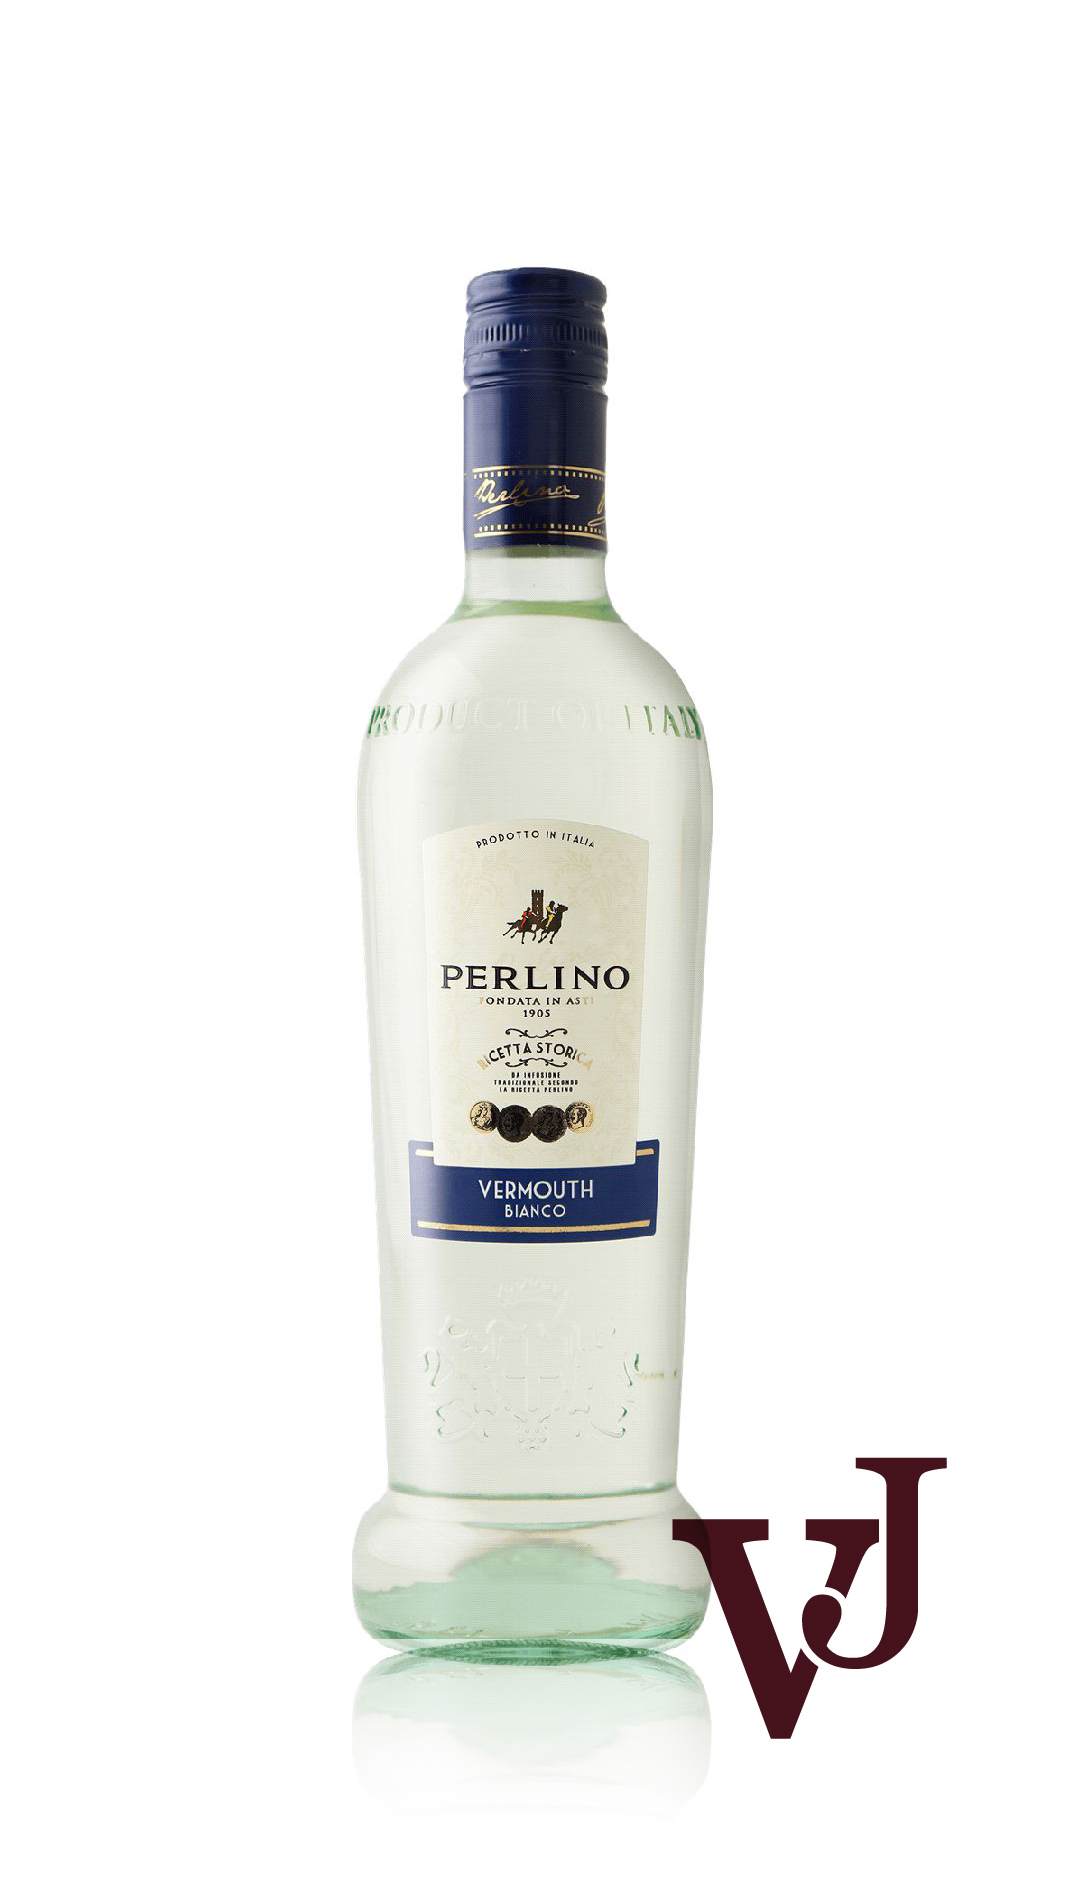 Övrigt vin - Perlino Bianco artikel nummer 817801 från producenten Perlino från området Italien - Vinjournalen.se